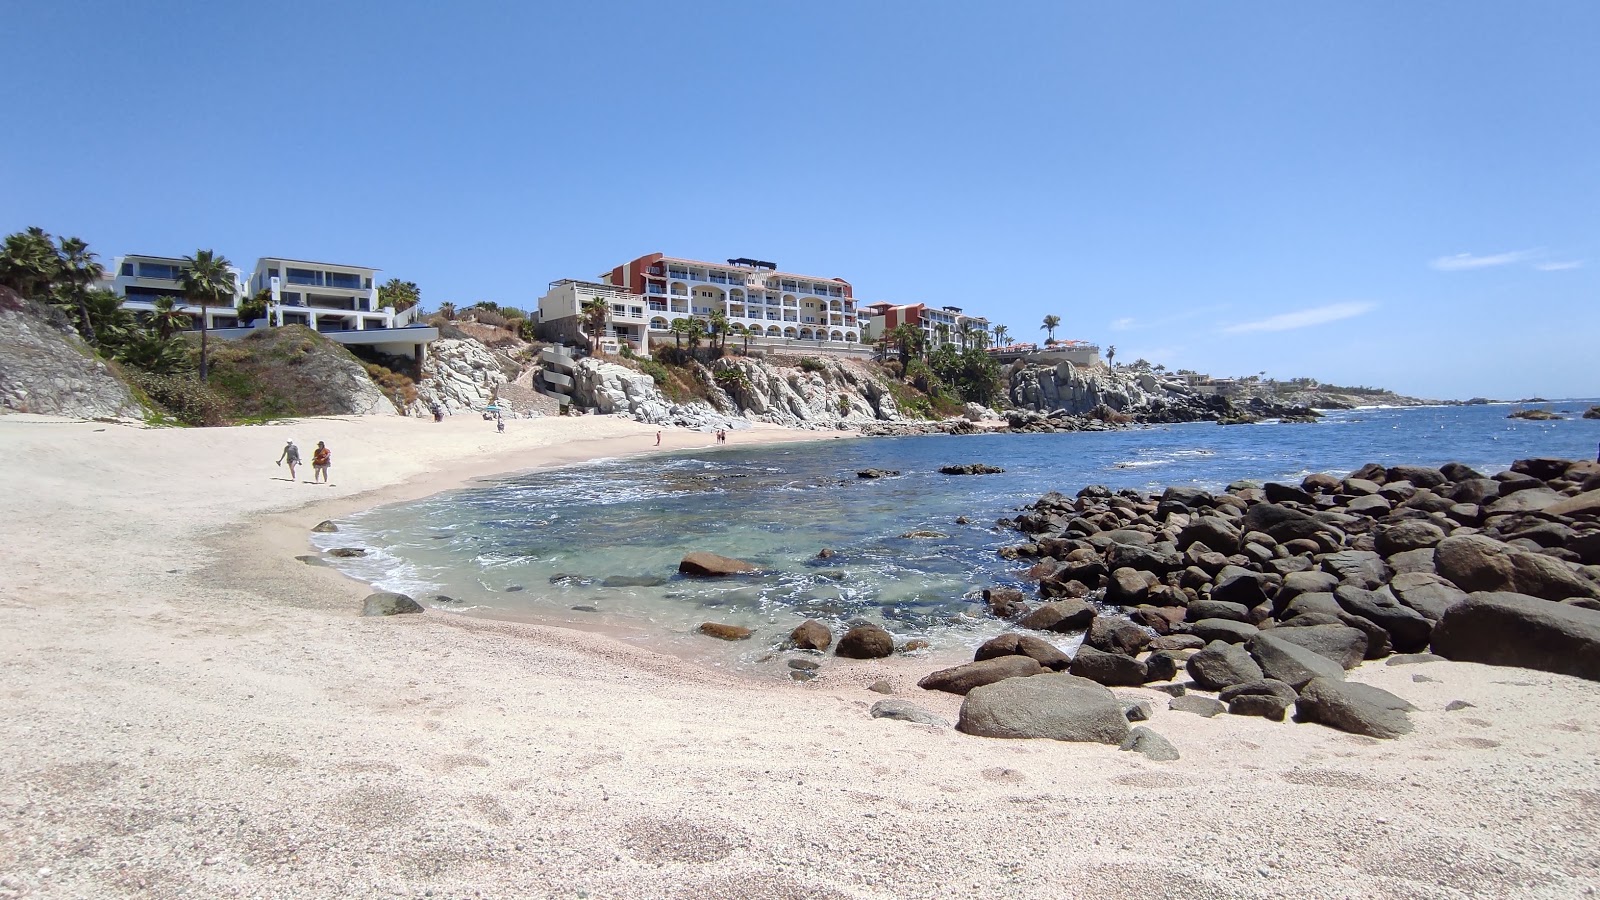 Playa Cabo Bello'in fotoğrafı parlak kum yüzey ile